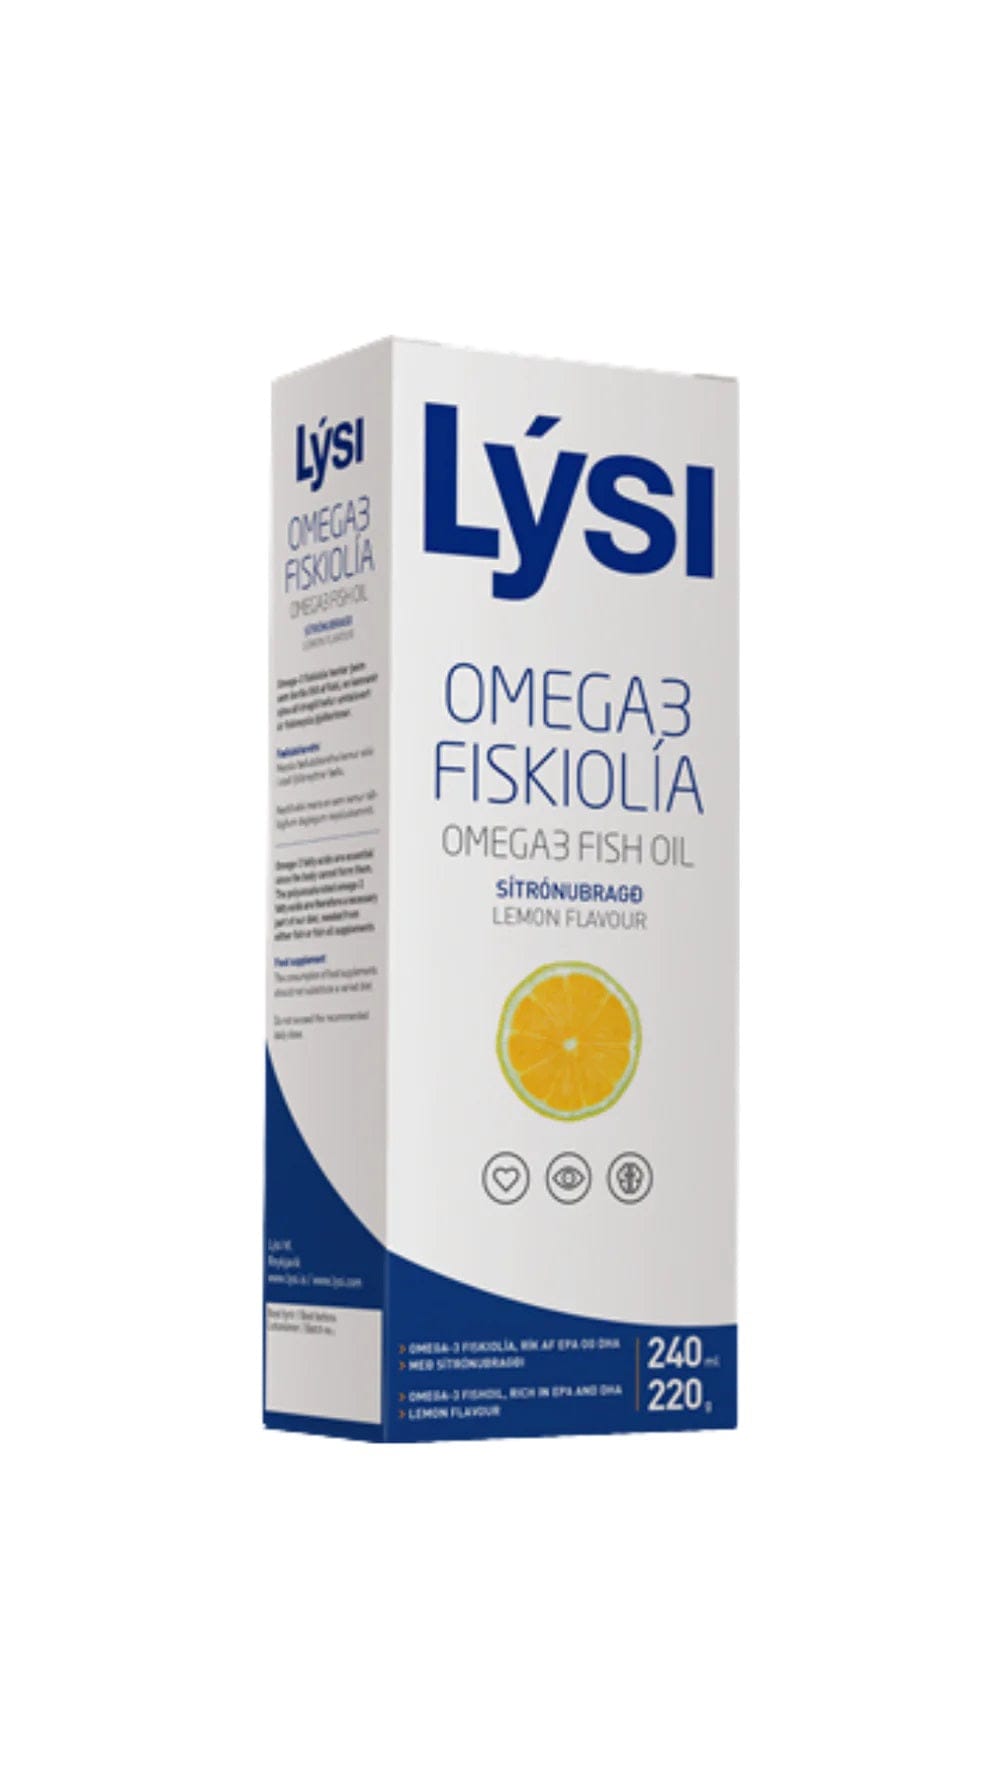 OMEGA-3 FISH OIL LEMON - PACK OF 12 - The Icelandic Store